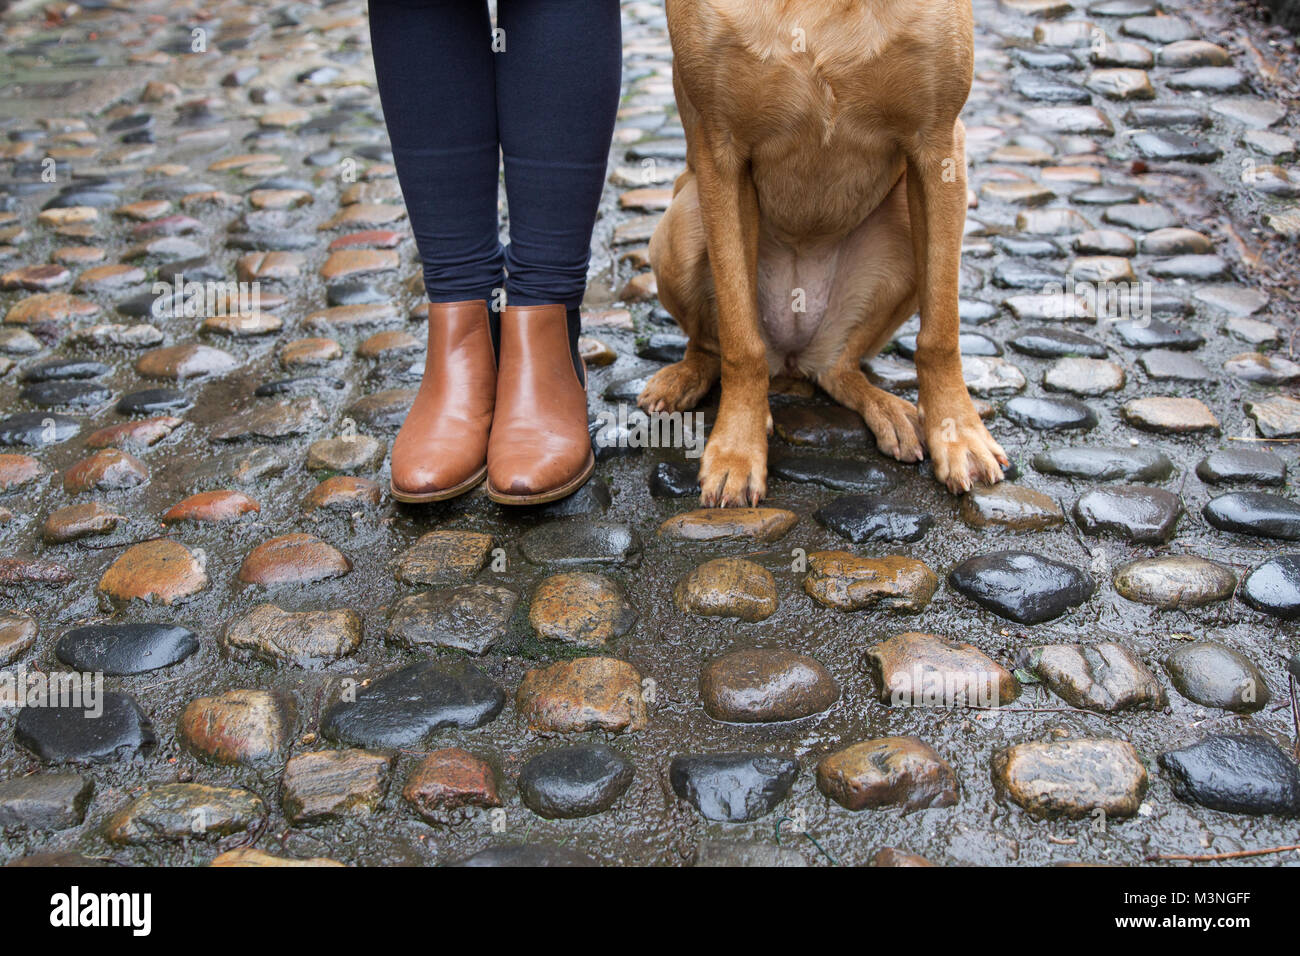 Una vista de la sección inferior de una moda mujer en marrón botas con su mascota perro Labrador sentada a su lado en brillante de adoquines en una calle adoquinada. Foto de stock